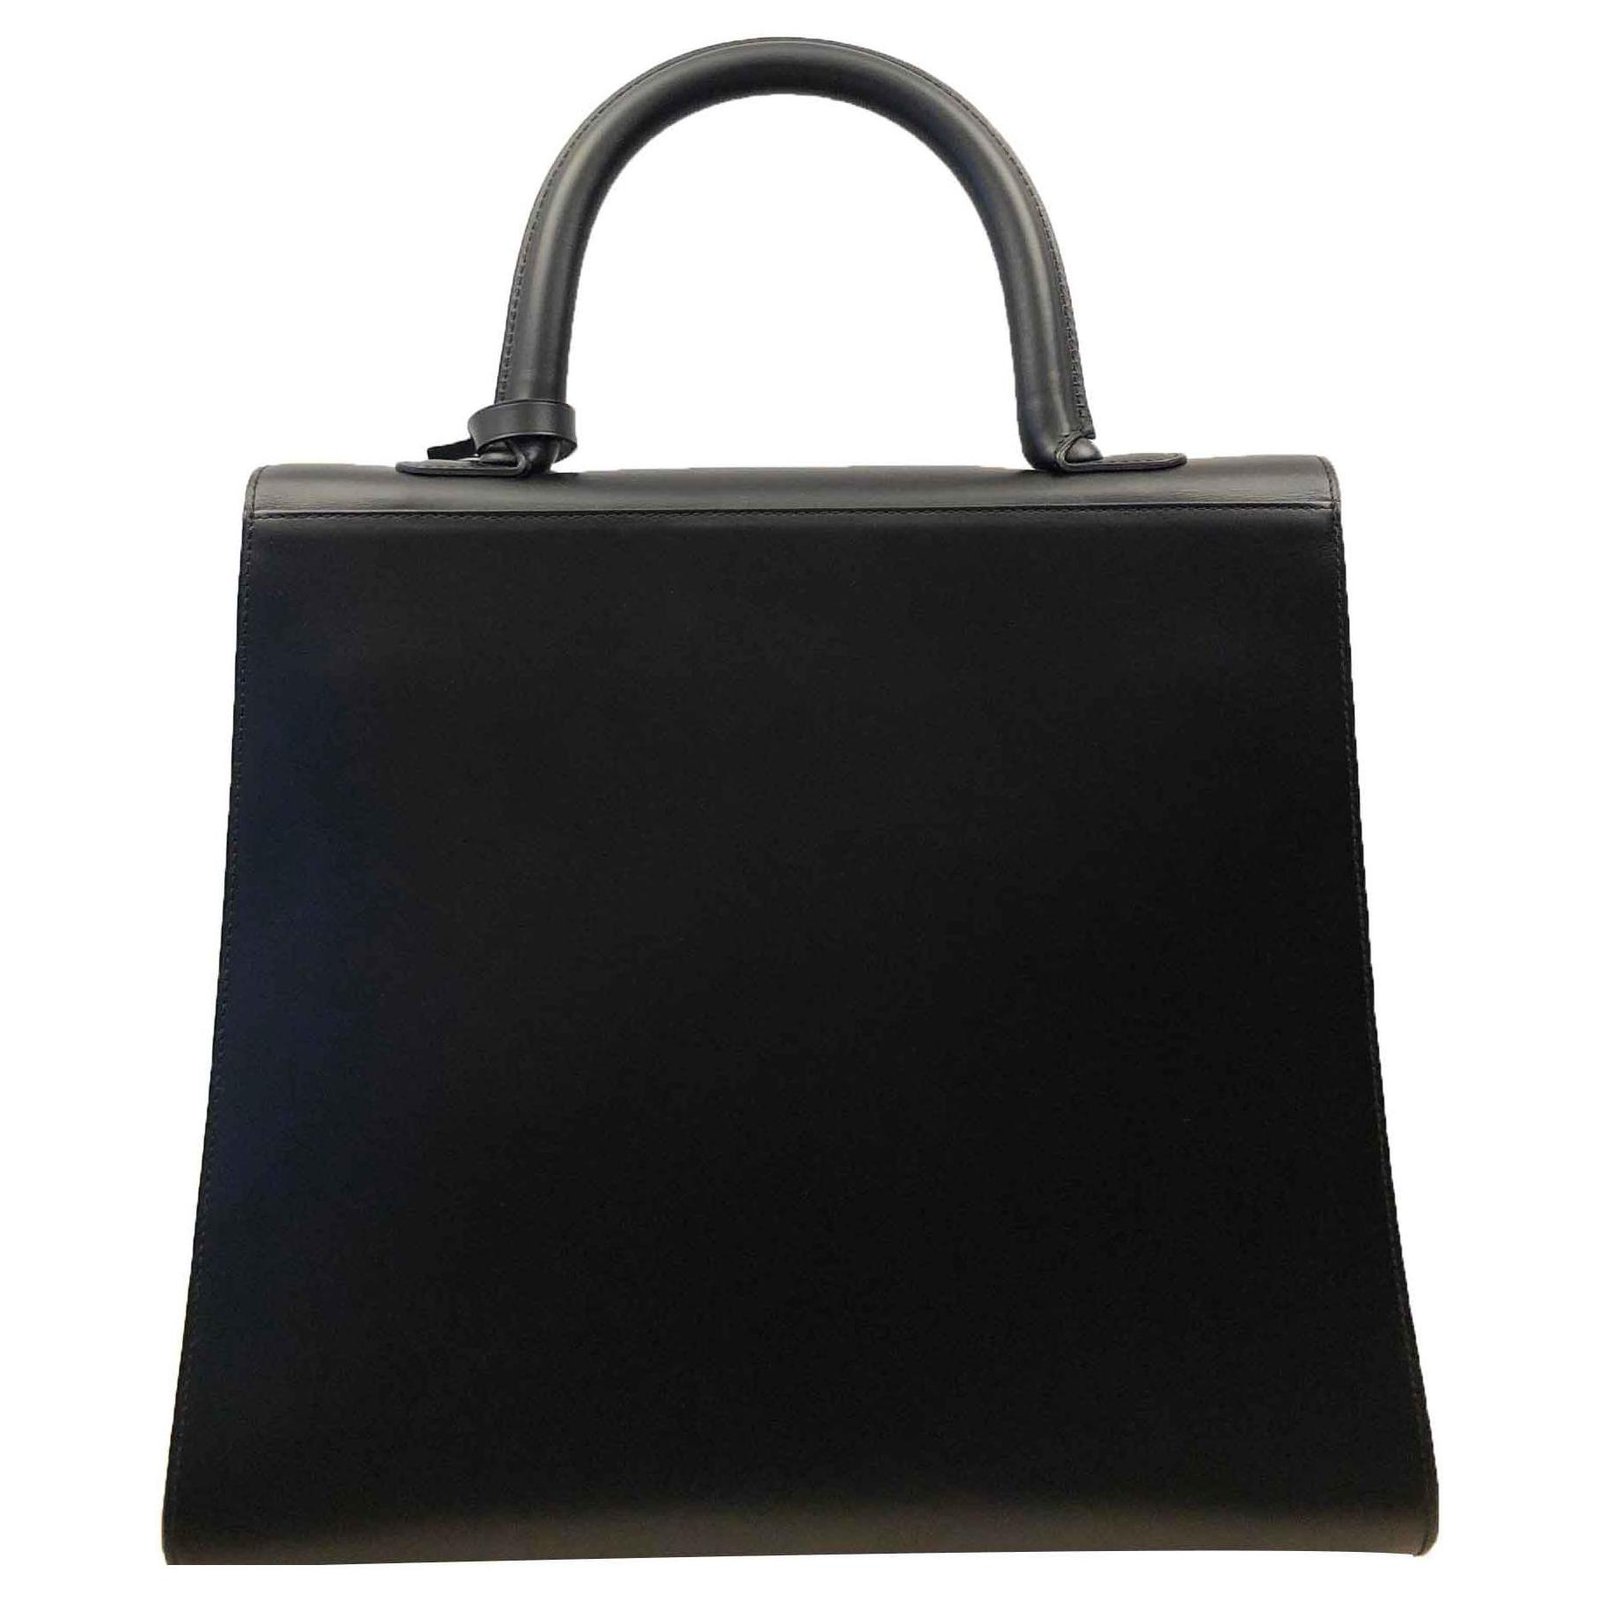 Tempête leather handbag Delvaux Black in Leather - 32603952